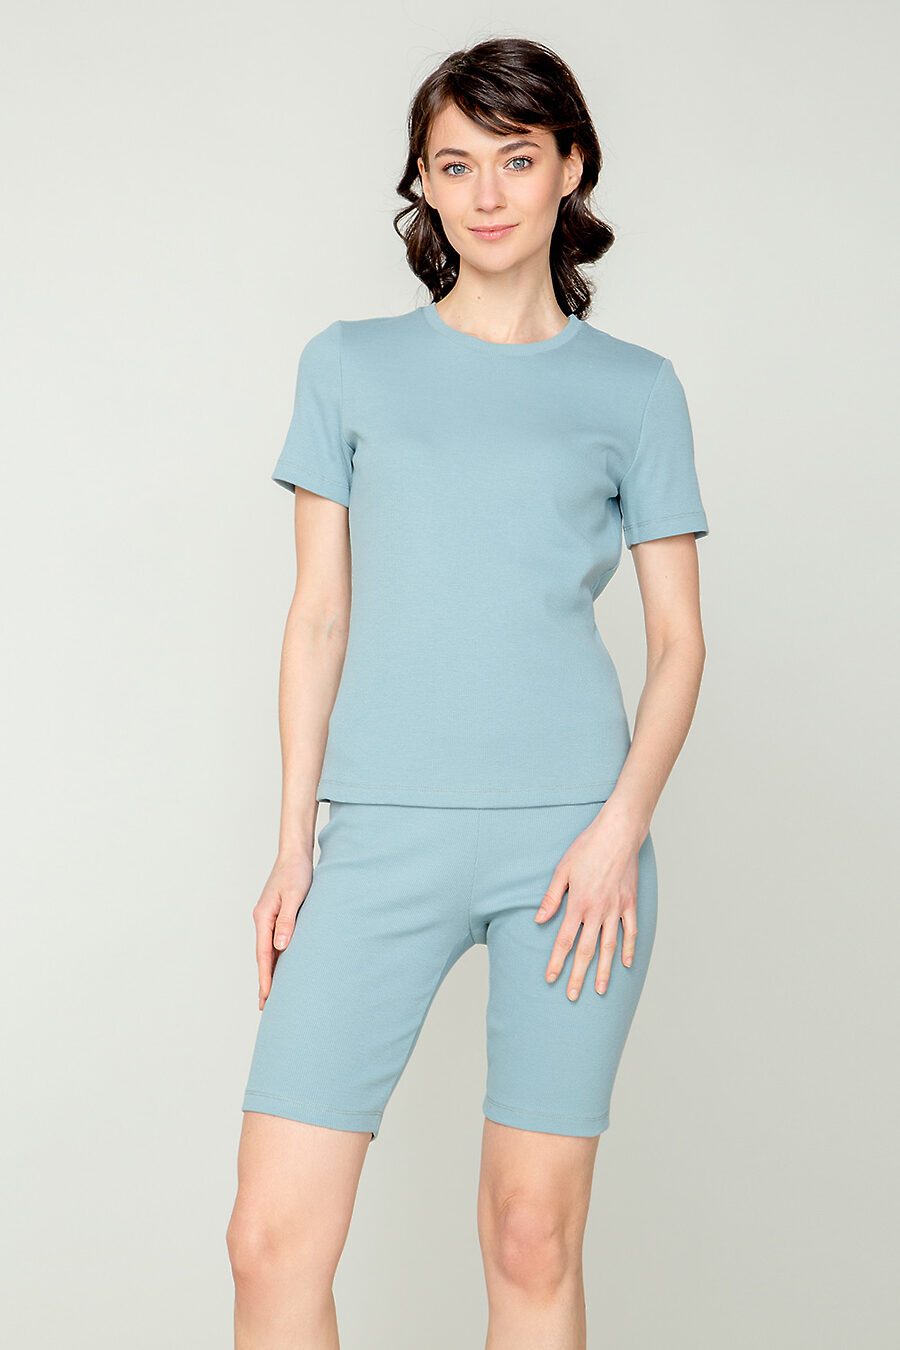 Пижама для женщин TRIKOZZA 796224 купить оптом от производителя. Совместная покупка женской одежды в OptMoyo